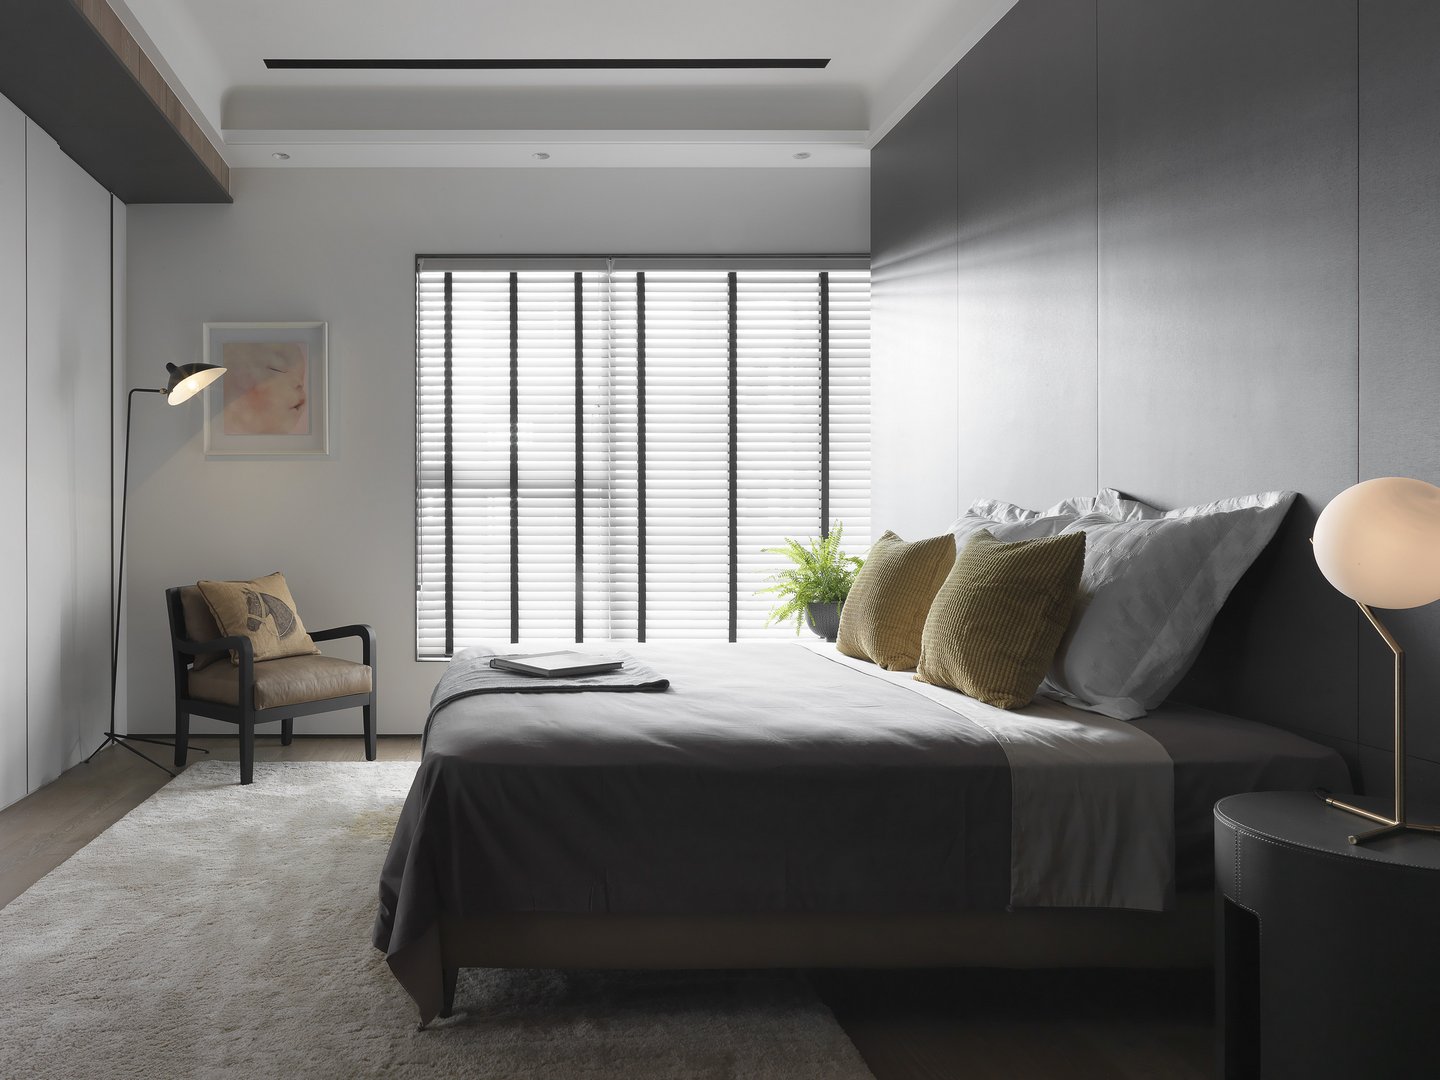 百叶窗吸引着人的目光，灰色与白色搭配呈现出静谧的氛围感，提升了卧室品质。